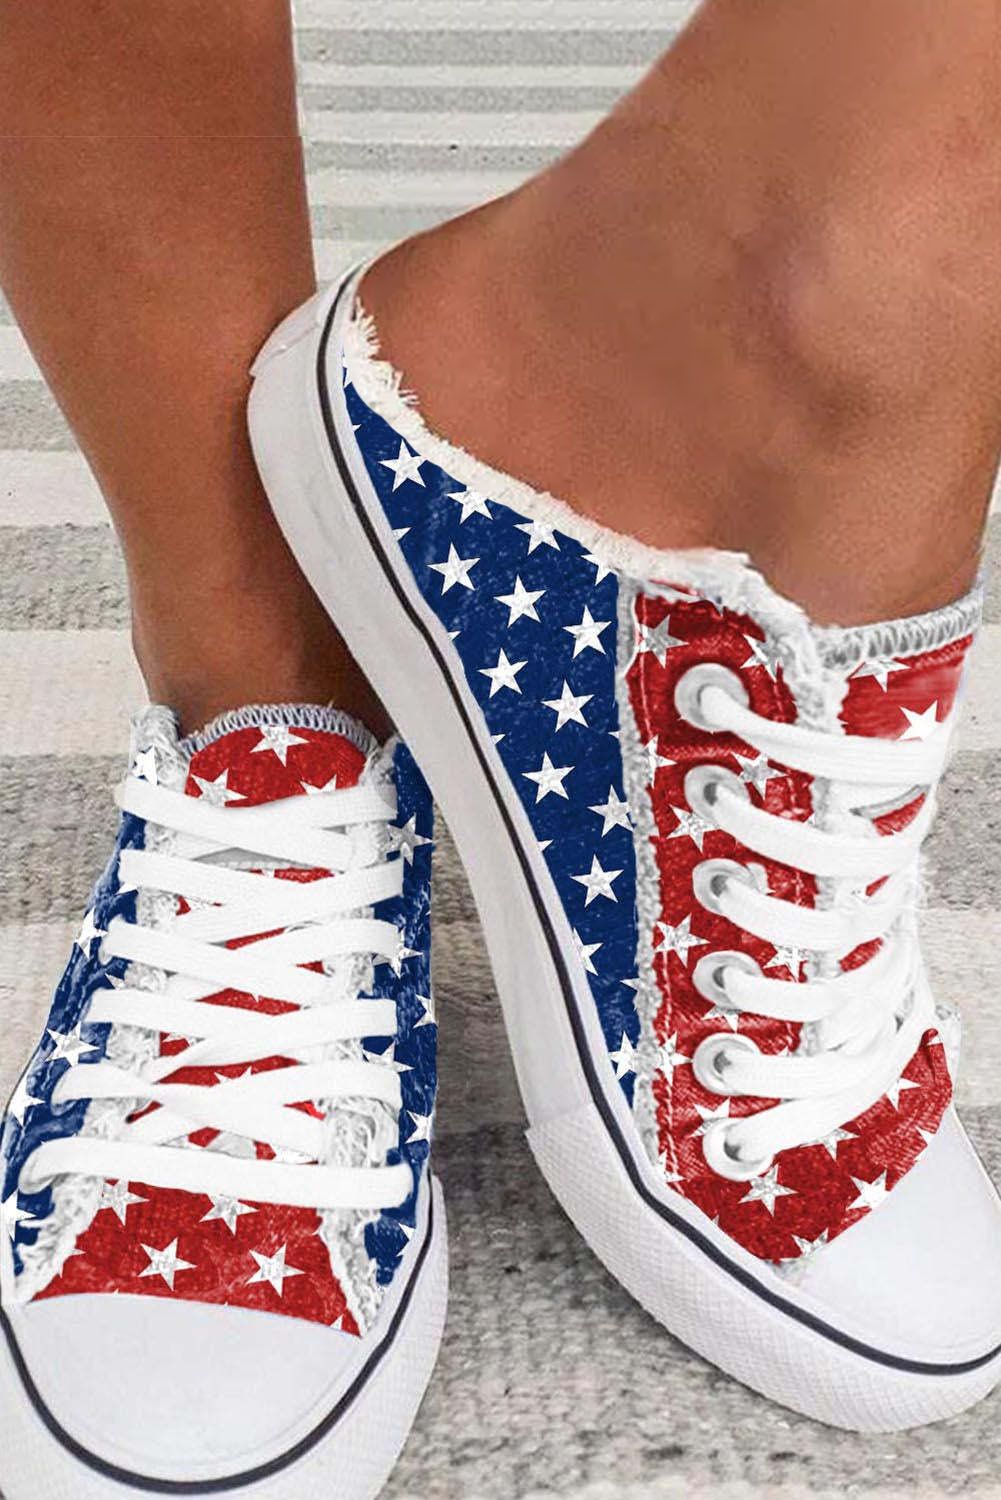 BH022624-3-38, BH022624-3-39, BH022624-3-43, BH022624-3-42, BH022624-3-41, BH022624-3-40, Red Women's The USA Flag Print Canvas Shoes Slip On Sneaker